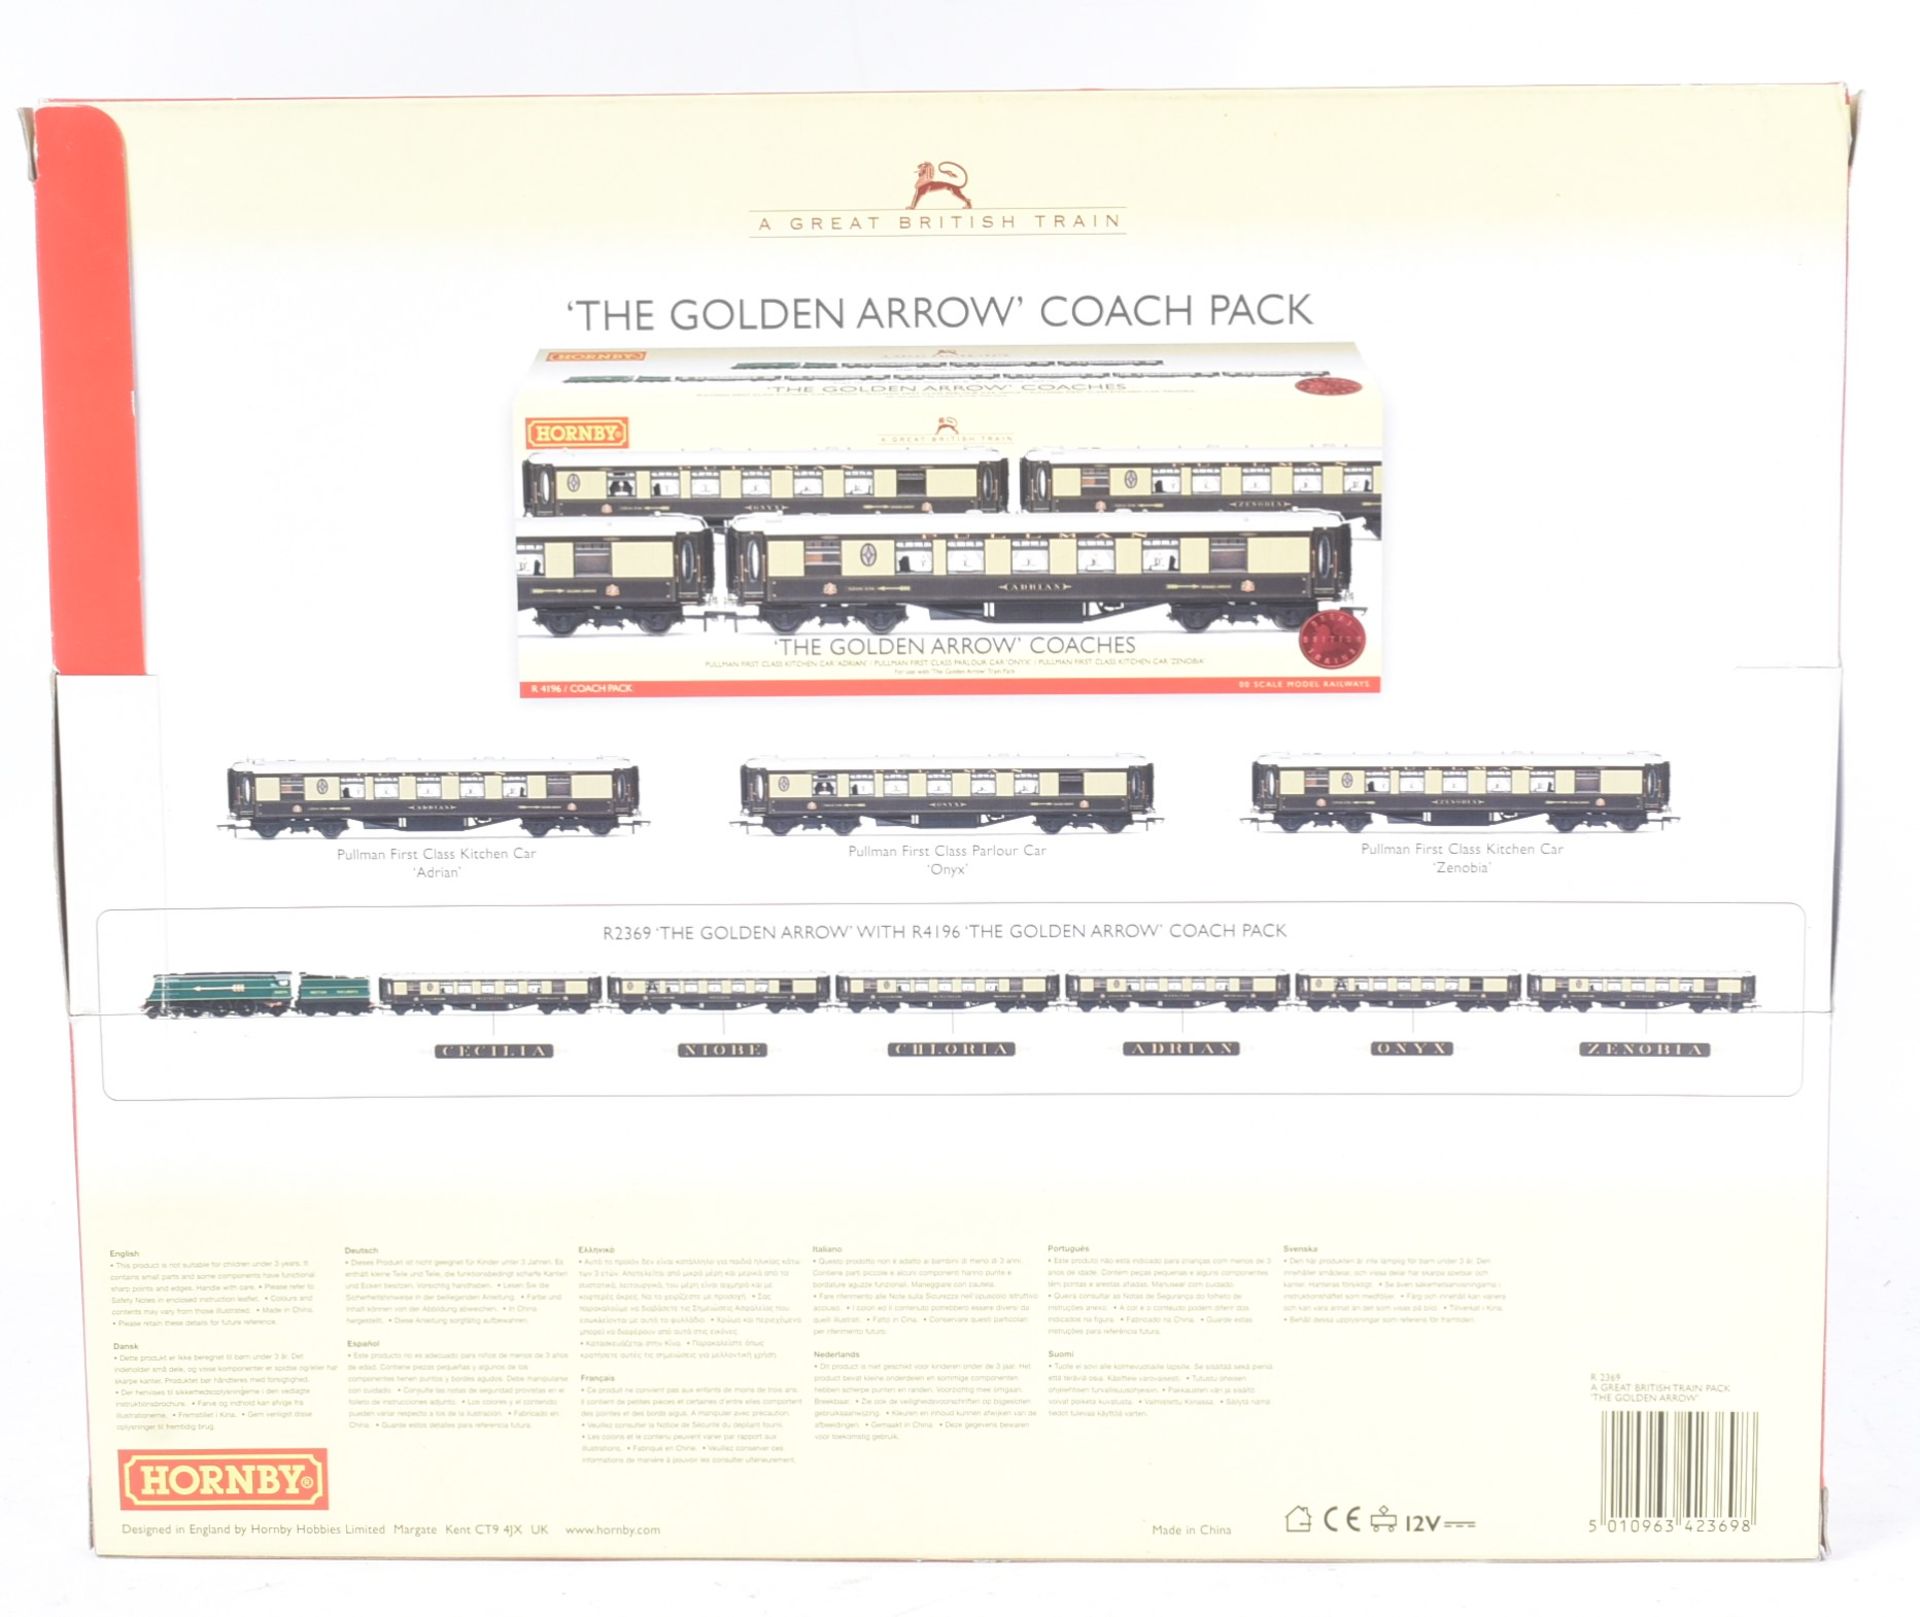 MODEL RAILWAY - HORNBY OO GAUGE GOLDEN ARROW LOCOMOTIVE TRAIN SET - Image 2 of 5